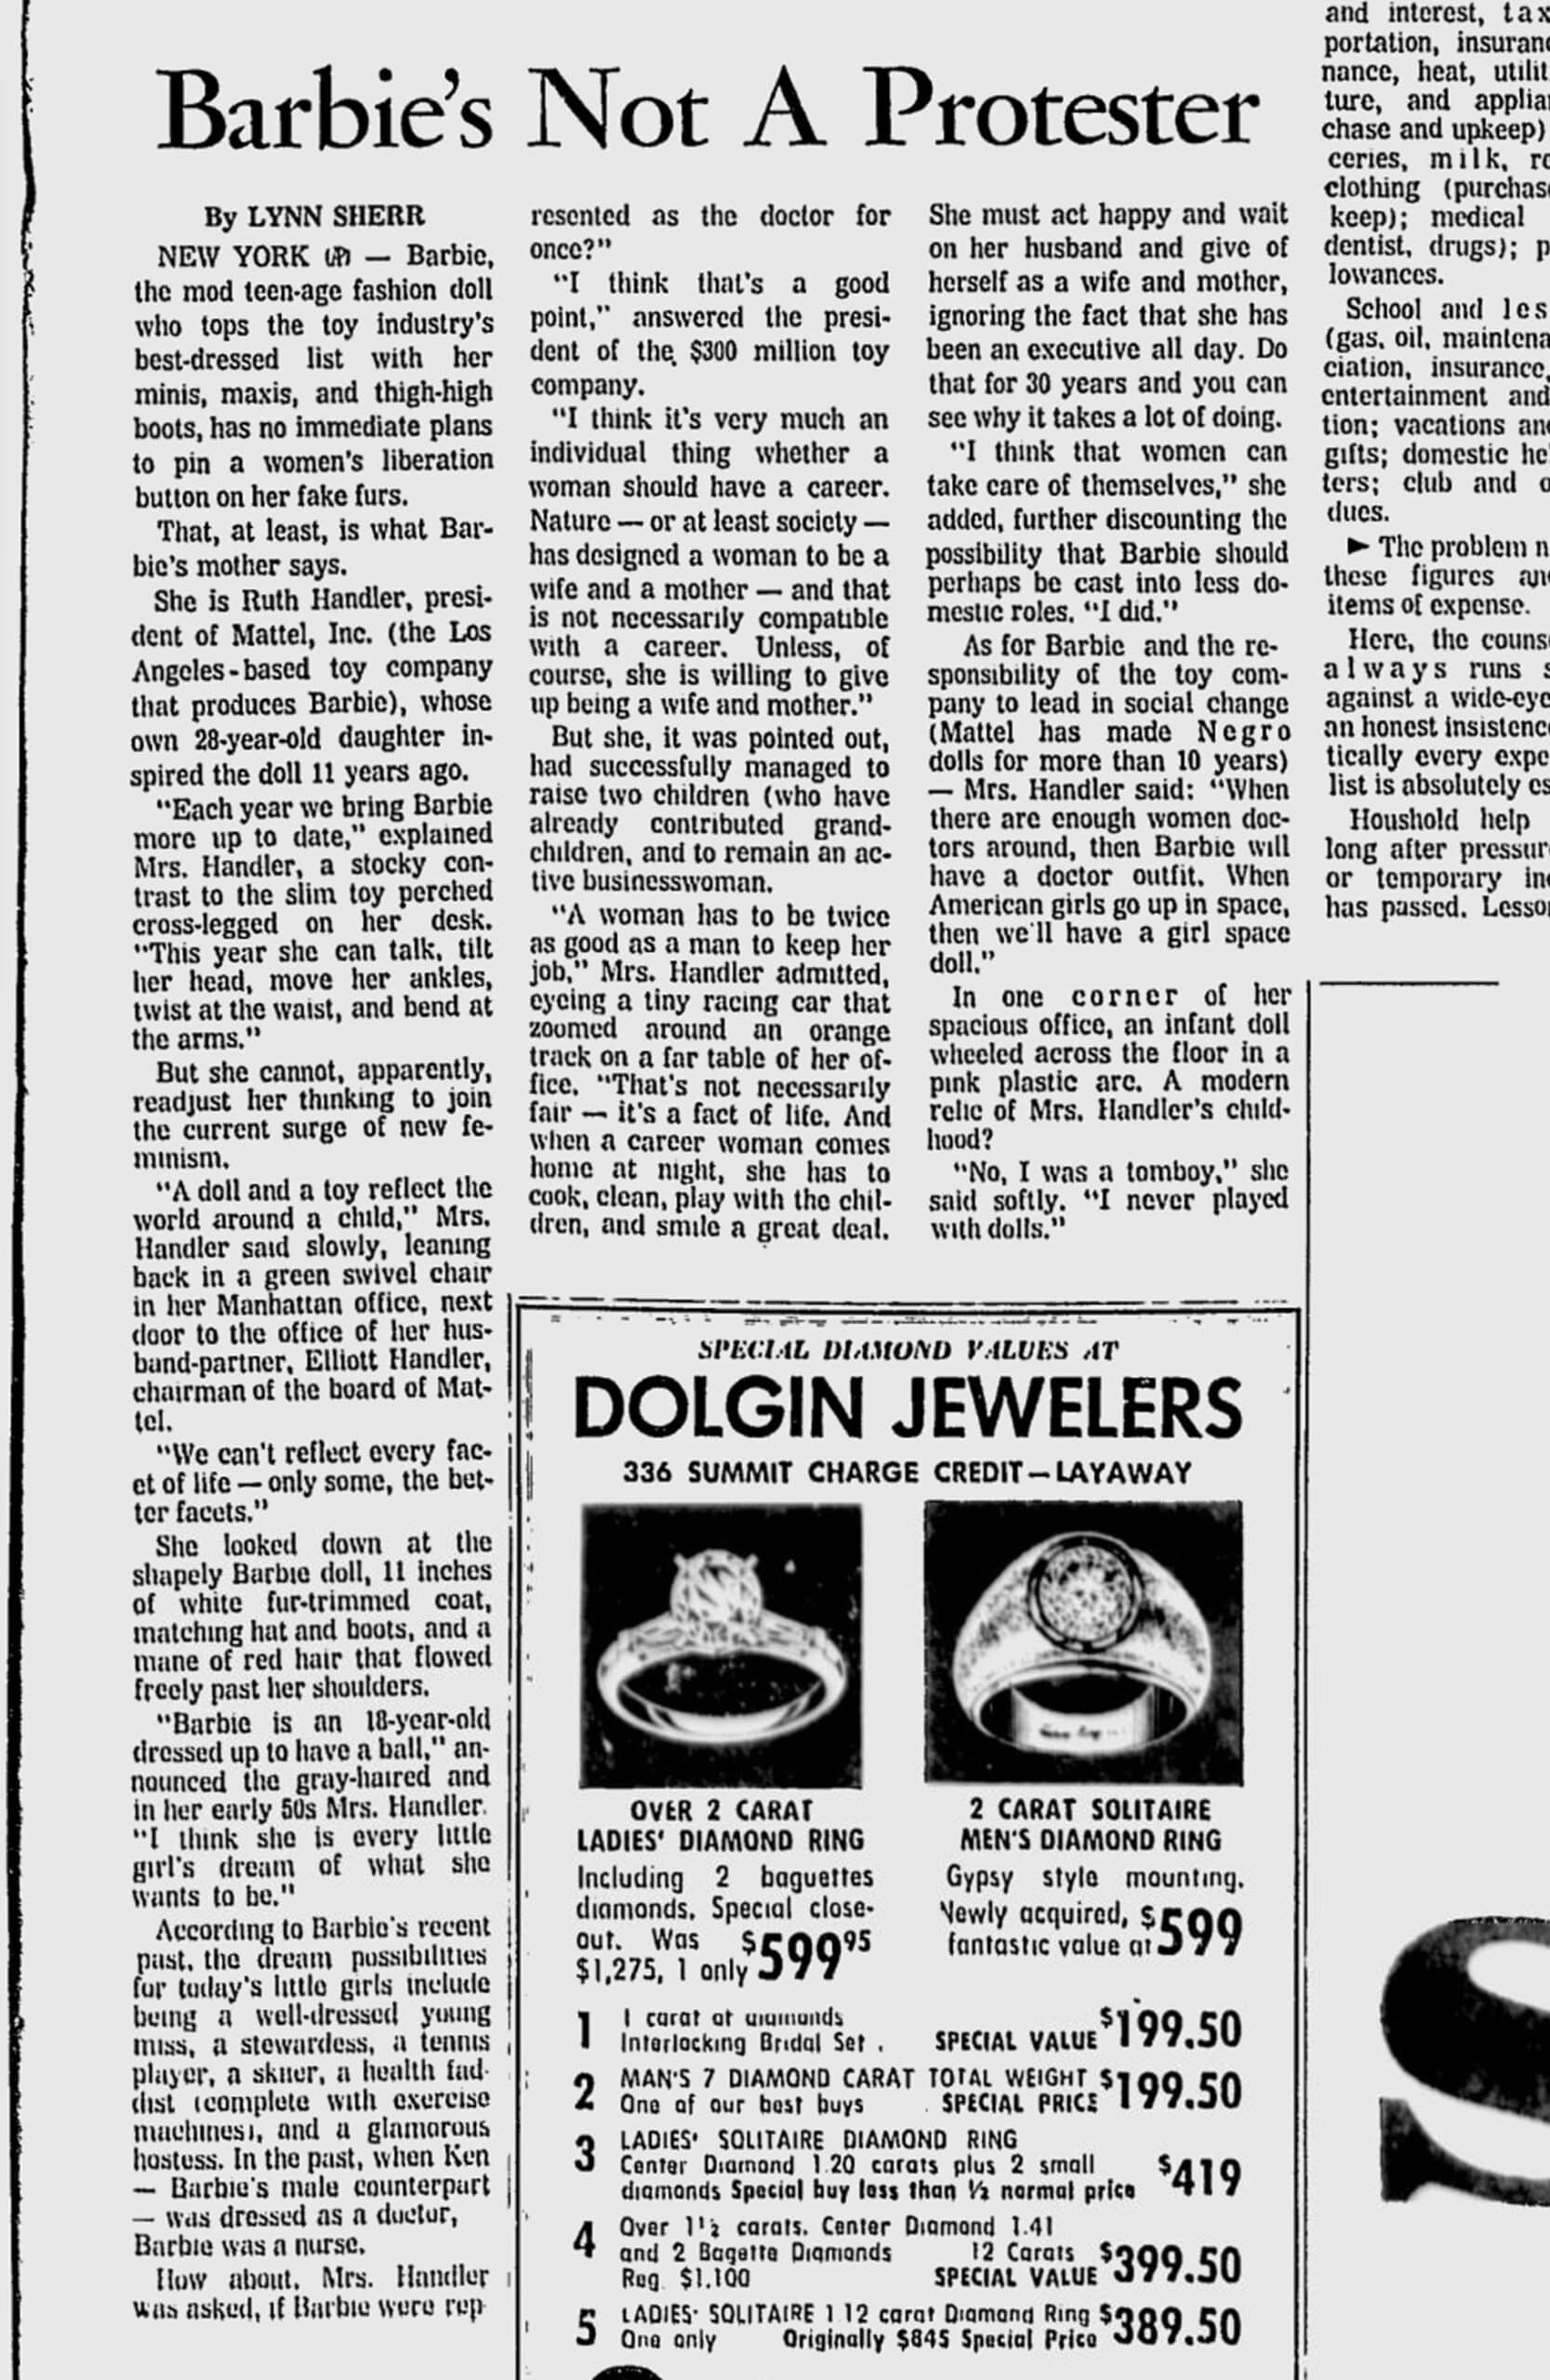 Toledo Blade, June 25, 1970